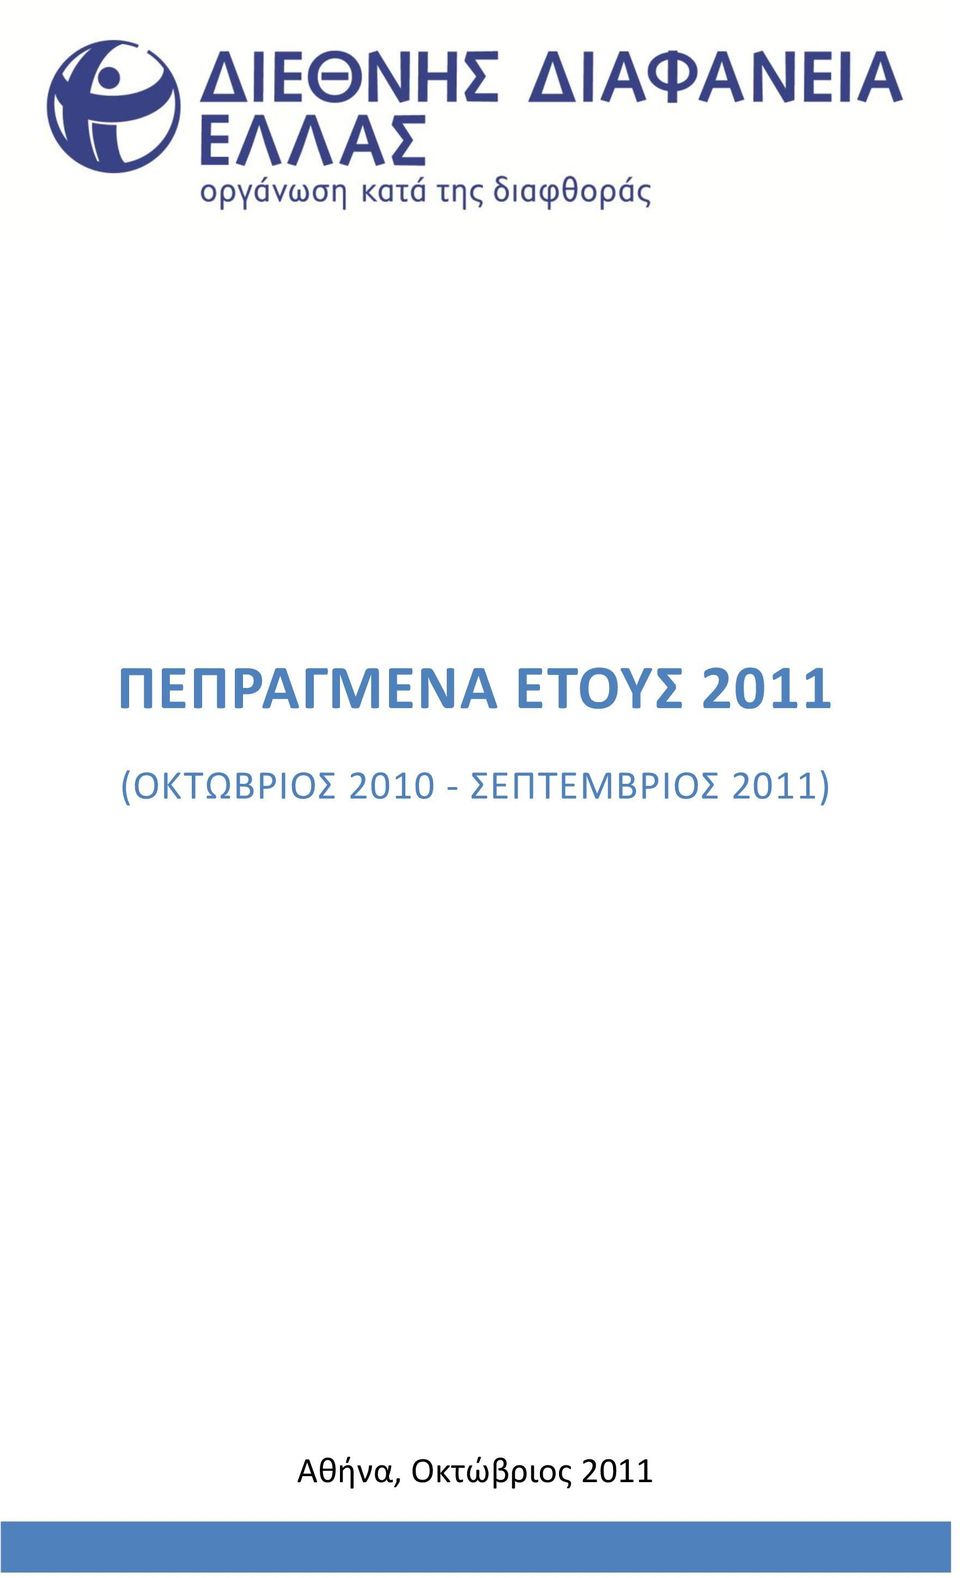 2010 - ΣΕΡΤΕΜΒΙΟΣ